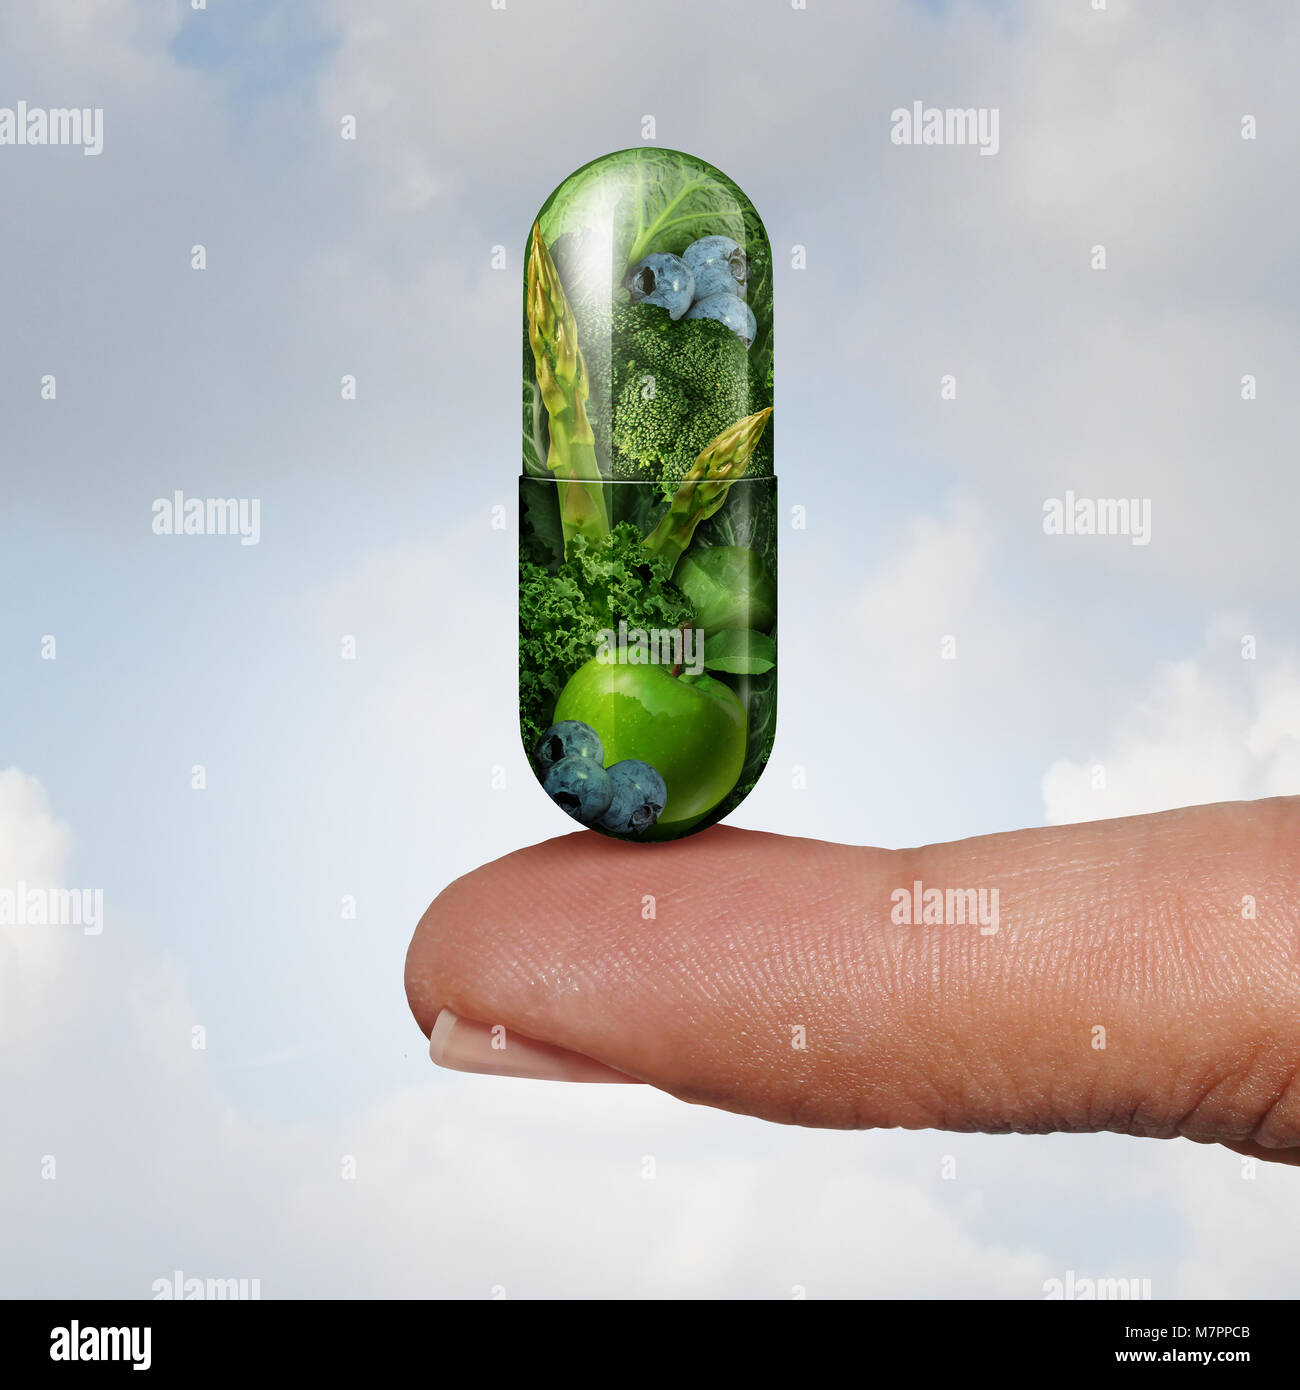 Gesundheit vitamin- und Nahrungsergänzungsmittel als alternative Medizin und Naturheilkunde oder Homöopathie Symbol wie ein Finger, eine gree Pille. Stockfoto